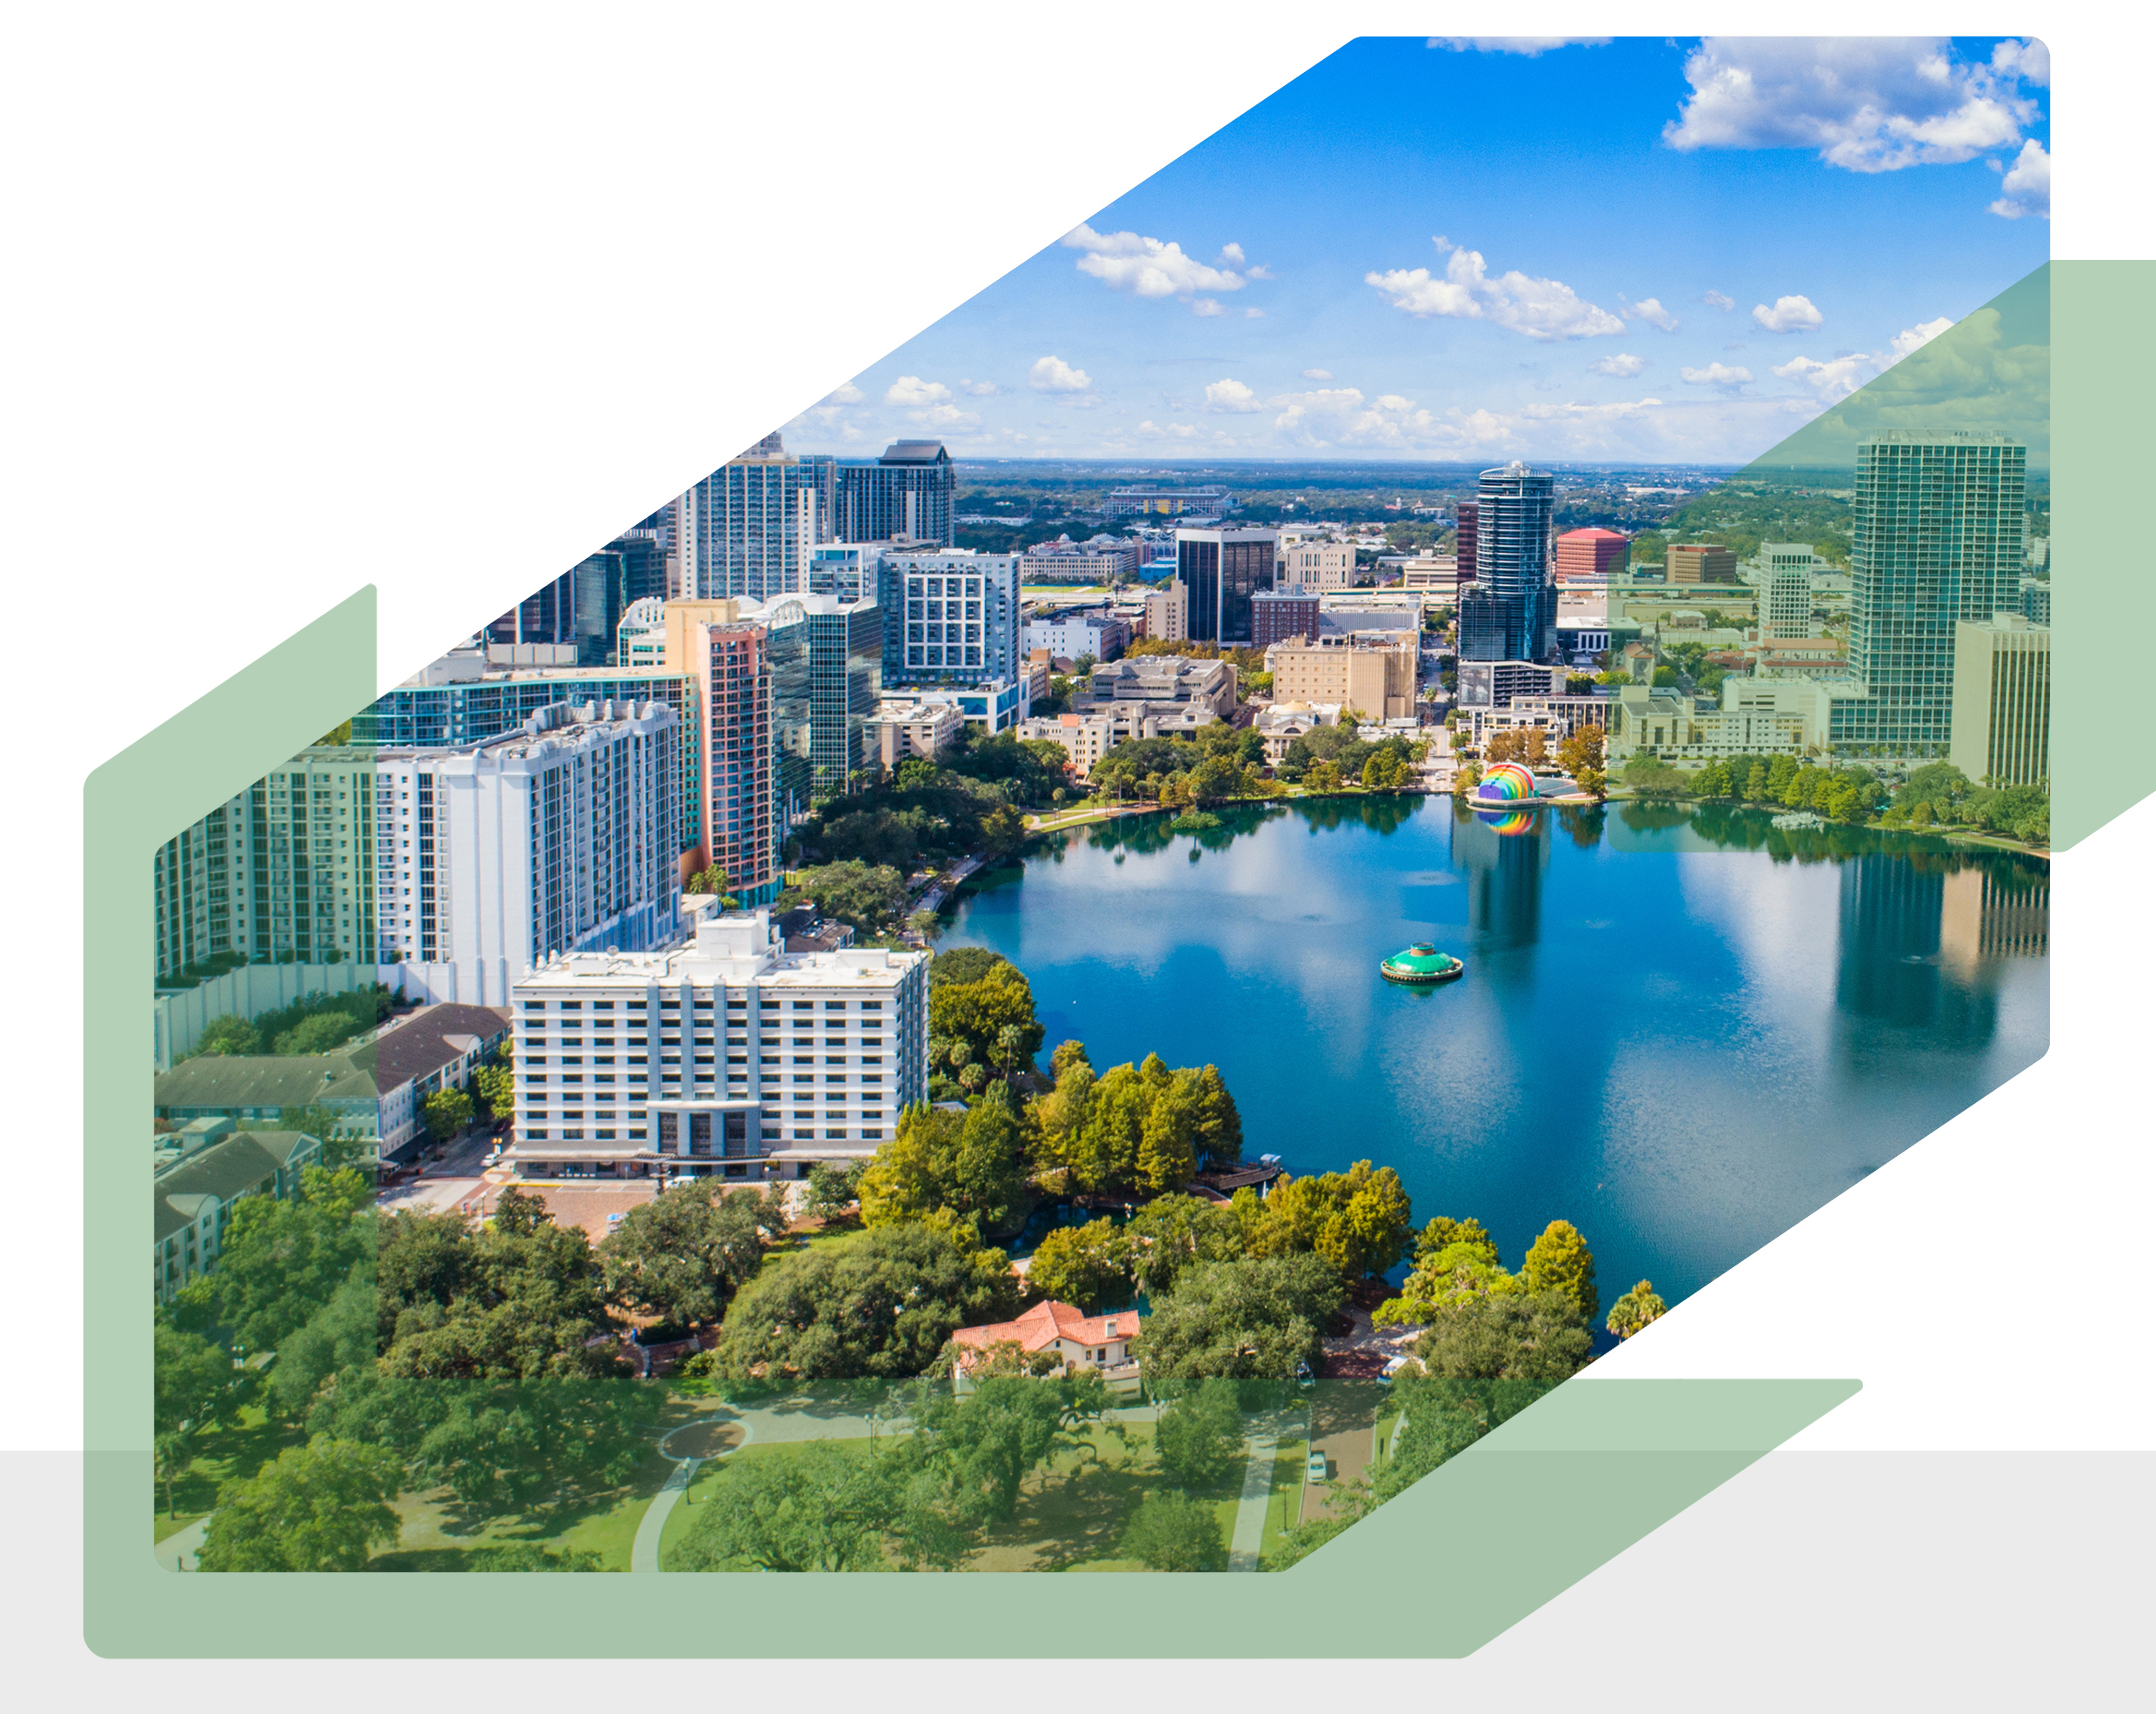 Conheça a cidade de Orlando e invista nos melhores bairros